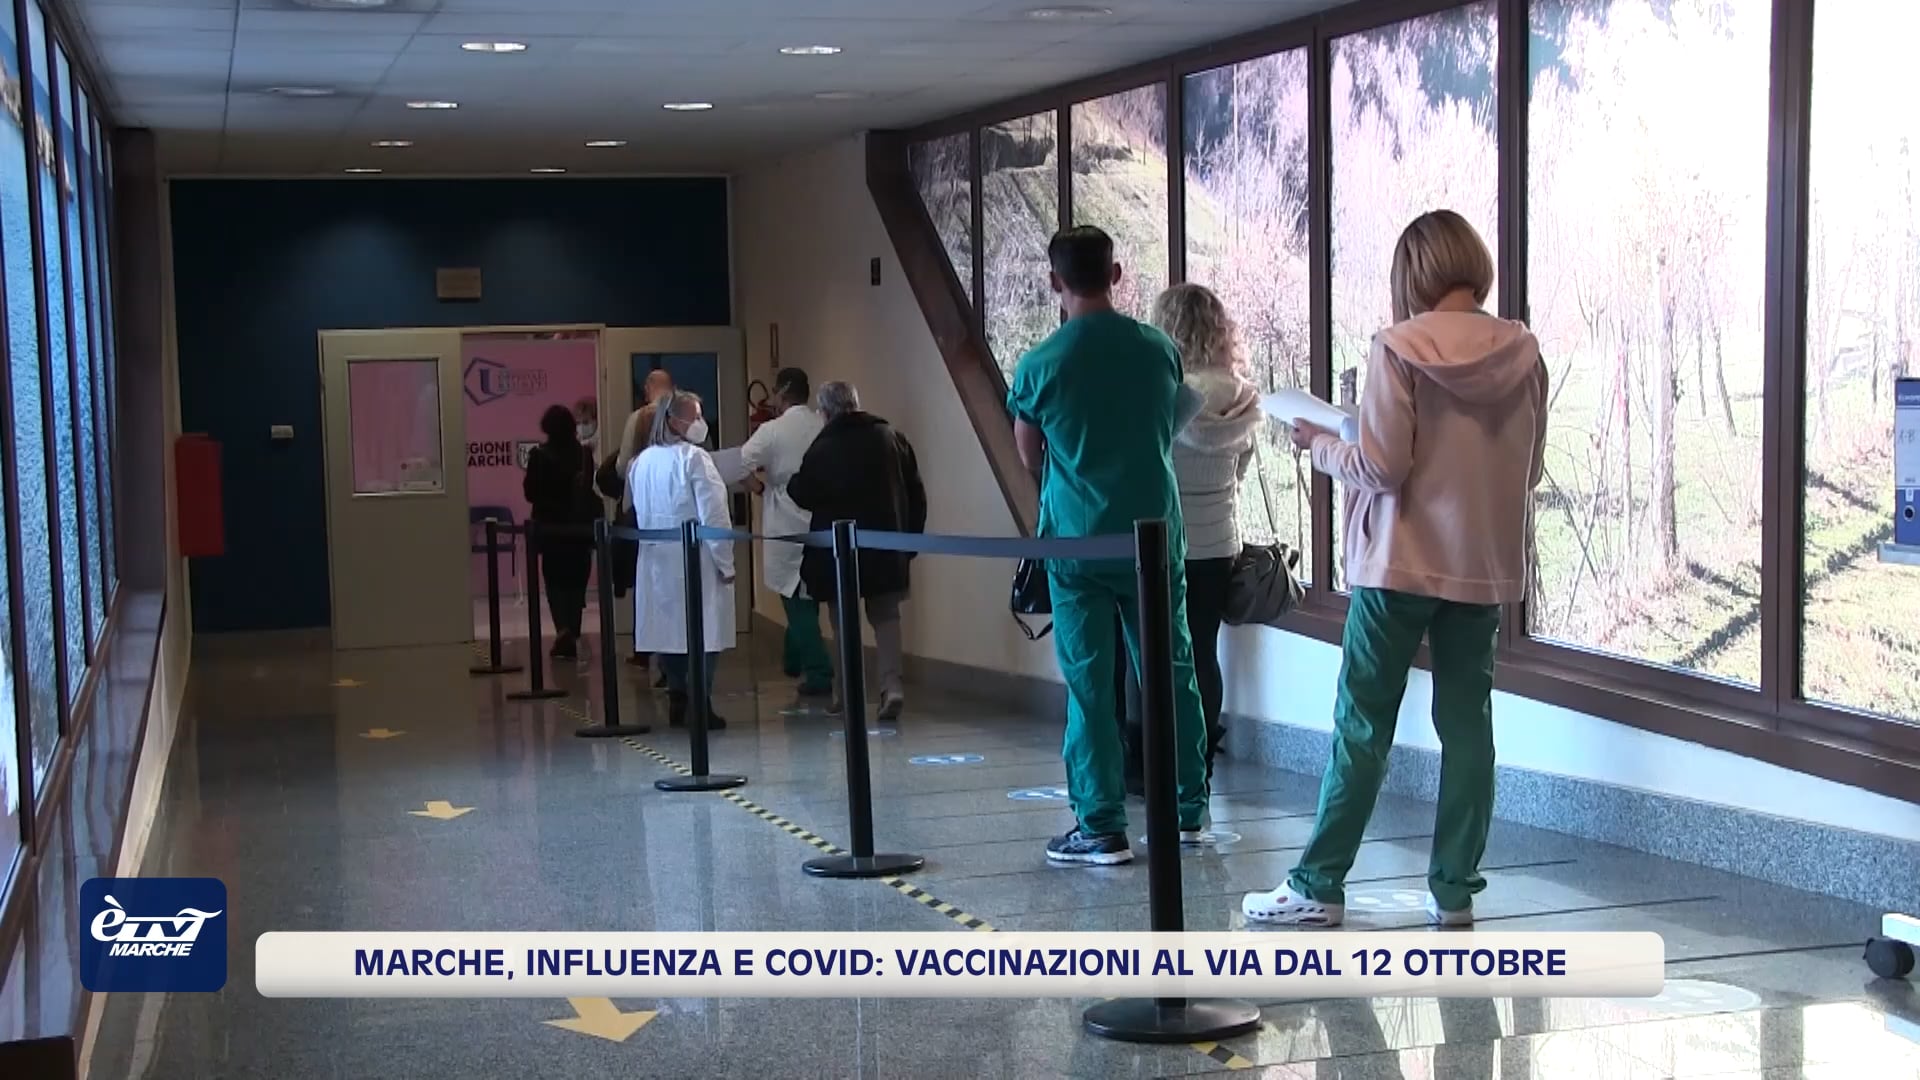 Marche, influenza e Covid: vaccinazioni al via dal 12 ottobre - VIDEO